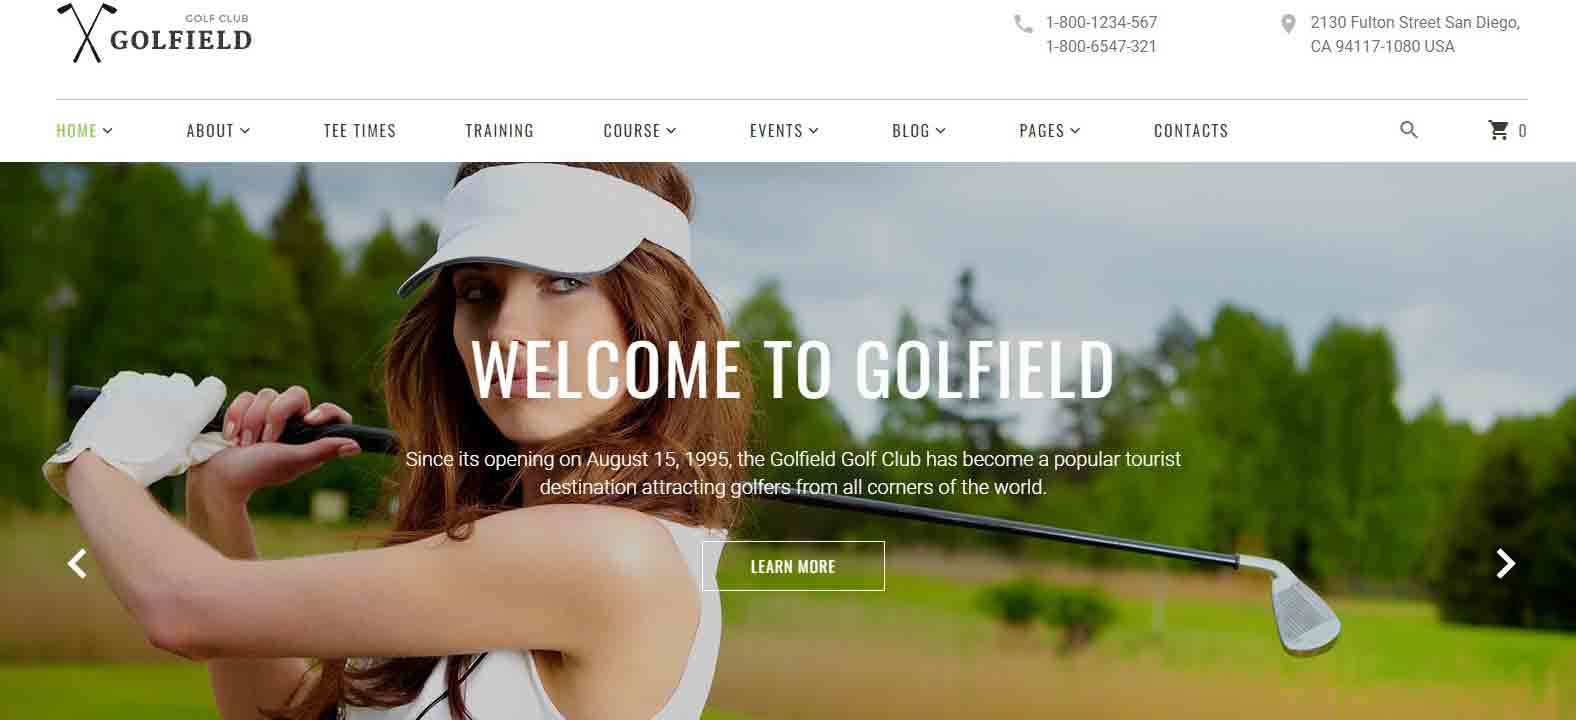 Golf-Field-Responsive-Website-Template